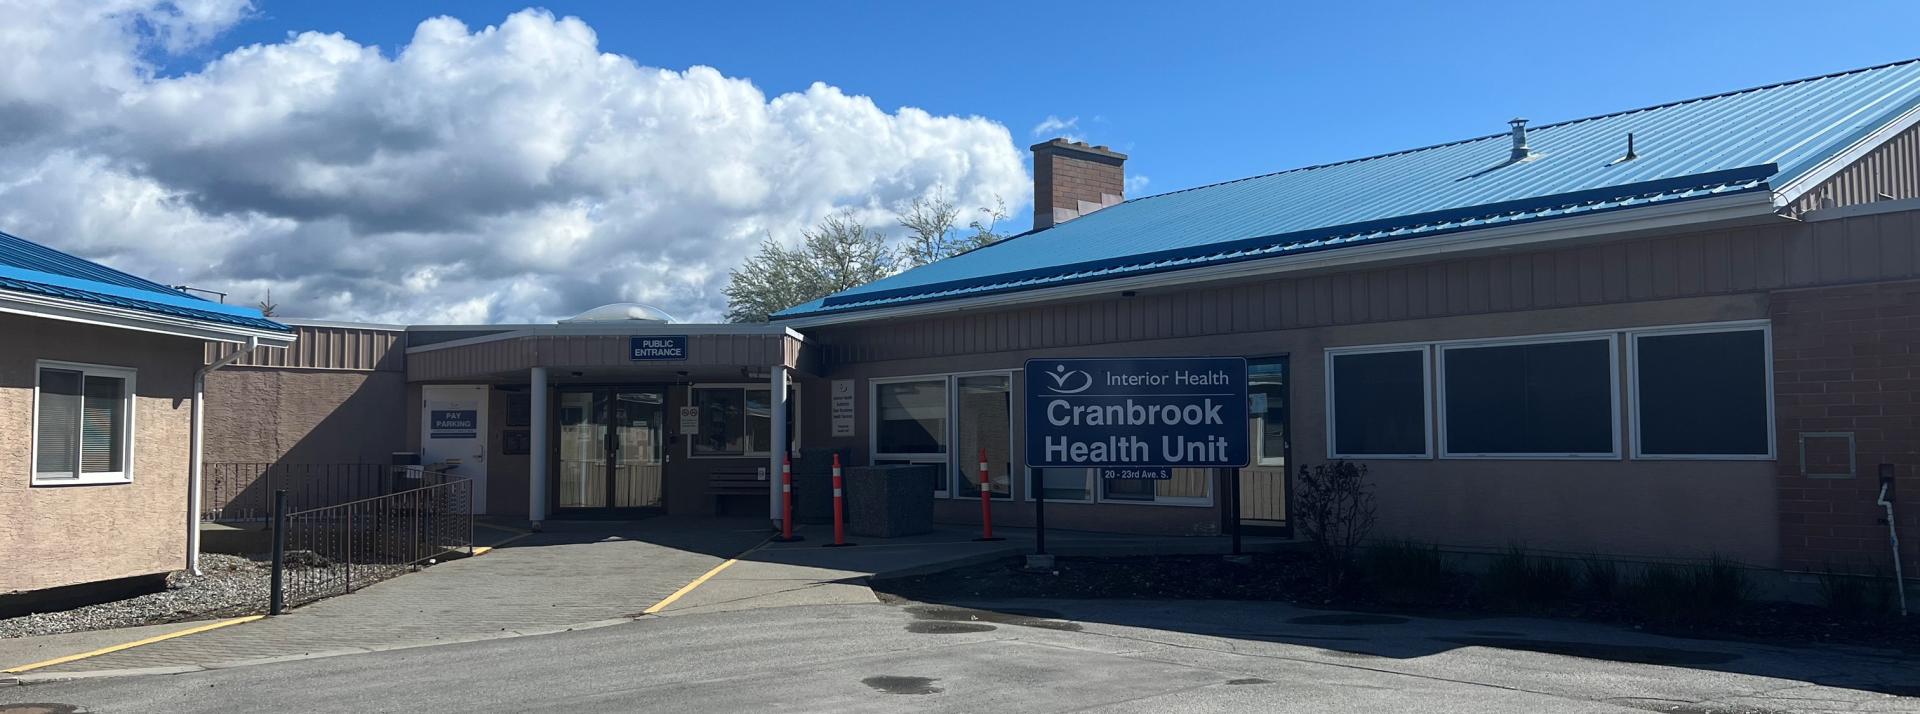 Cranbrook Health Unit Exterior